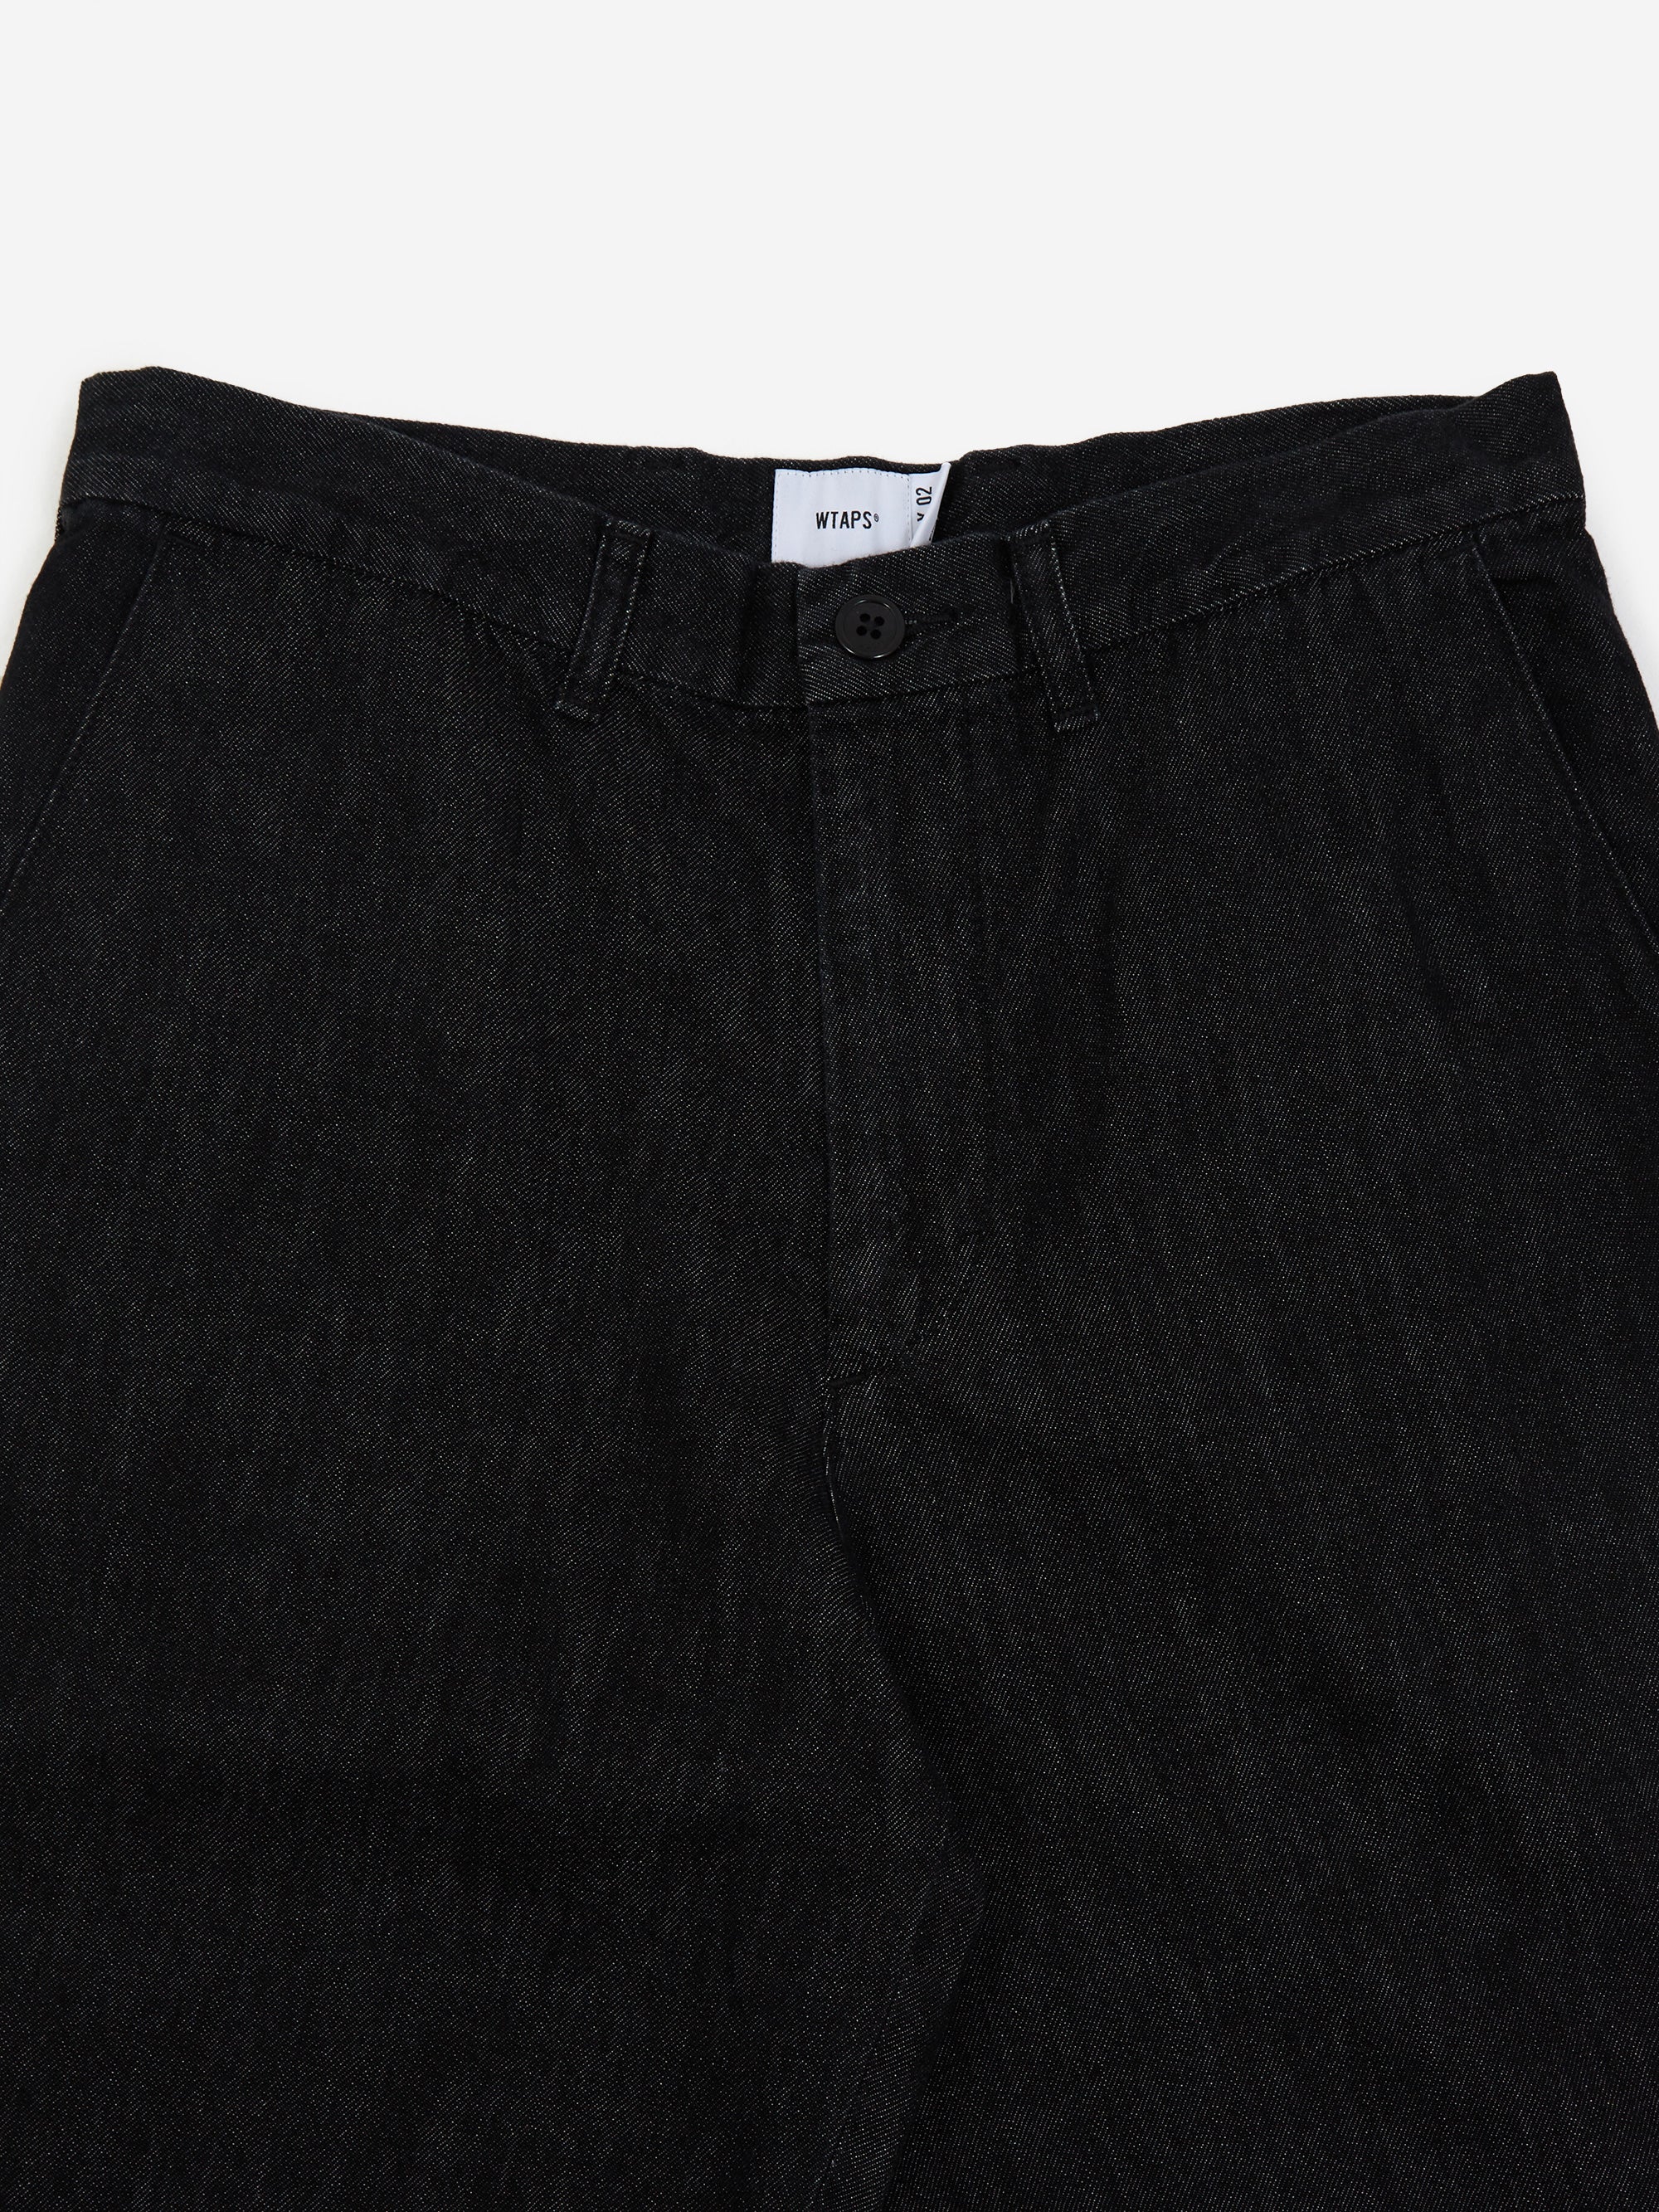 WTAPS WRKT2002 / Trousers 08 / Cotton. Denim - Black